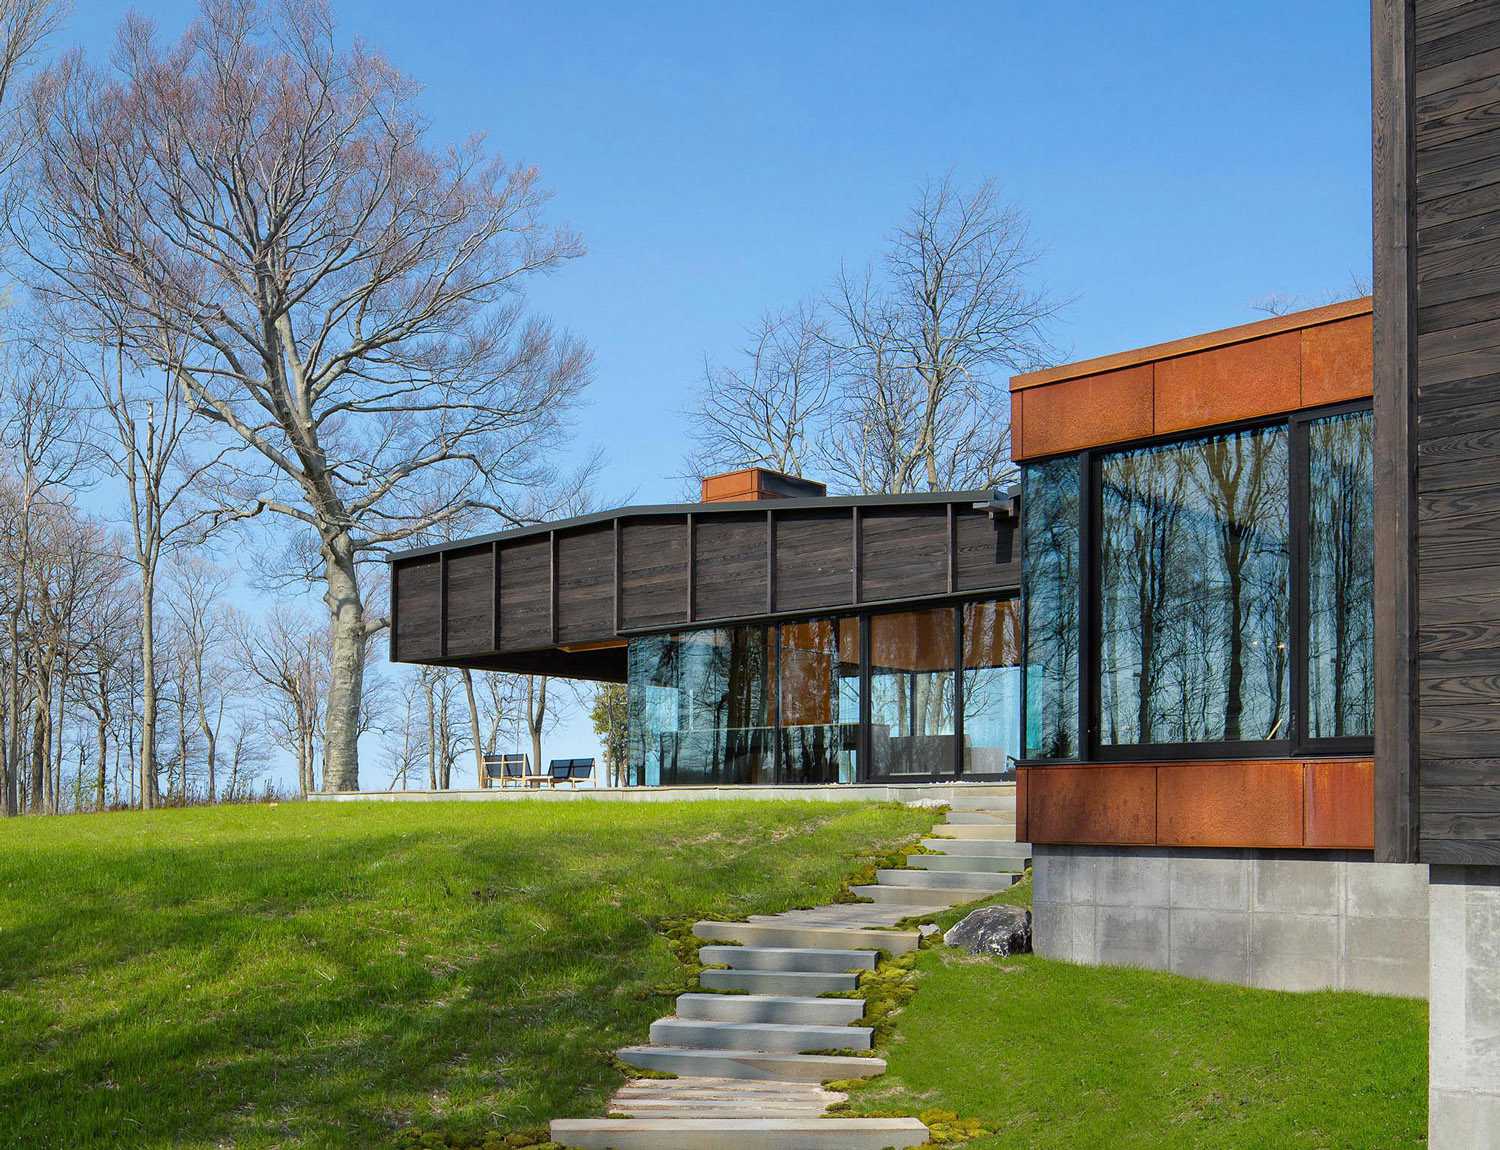 Références vernaculaires et façade en bois carbonisé. Maison sur le lac Michigan